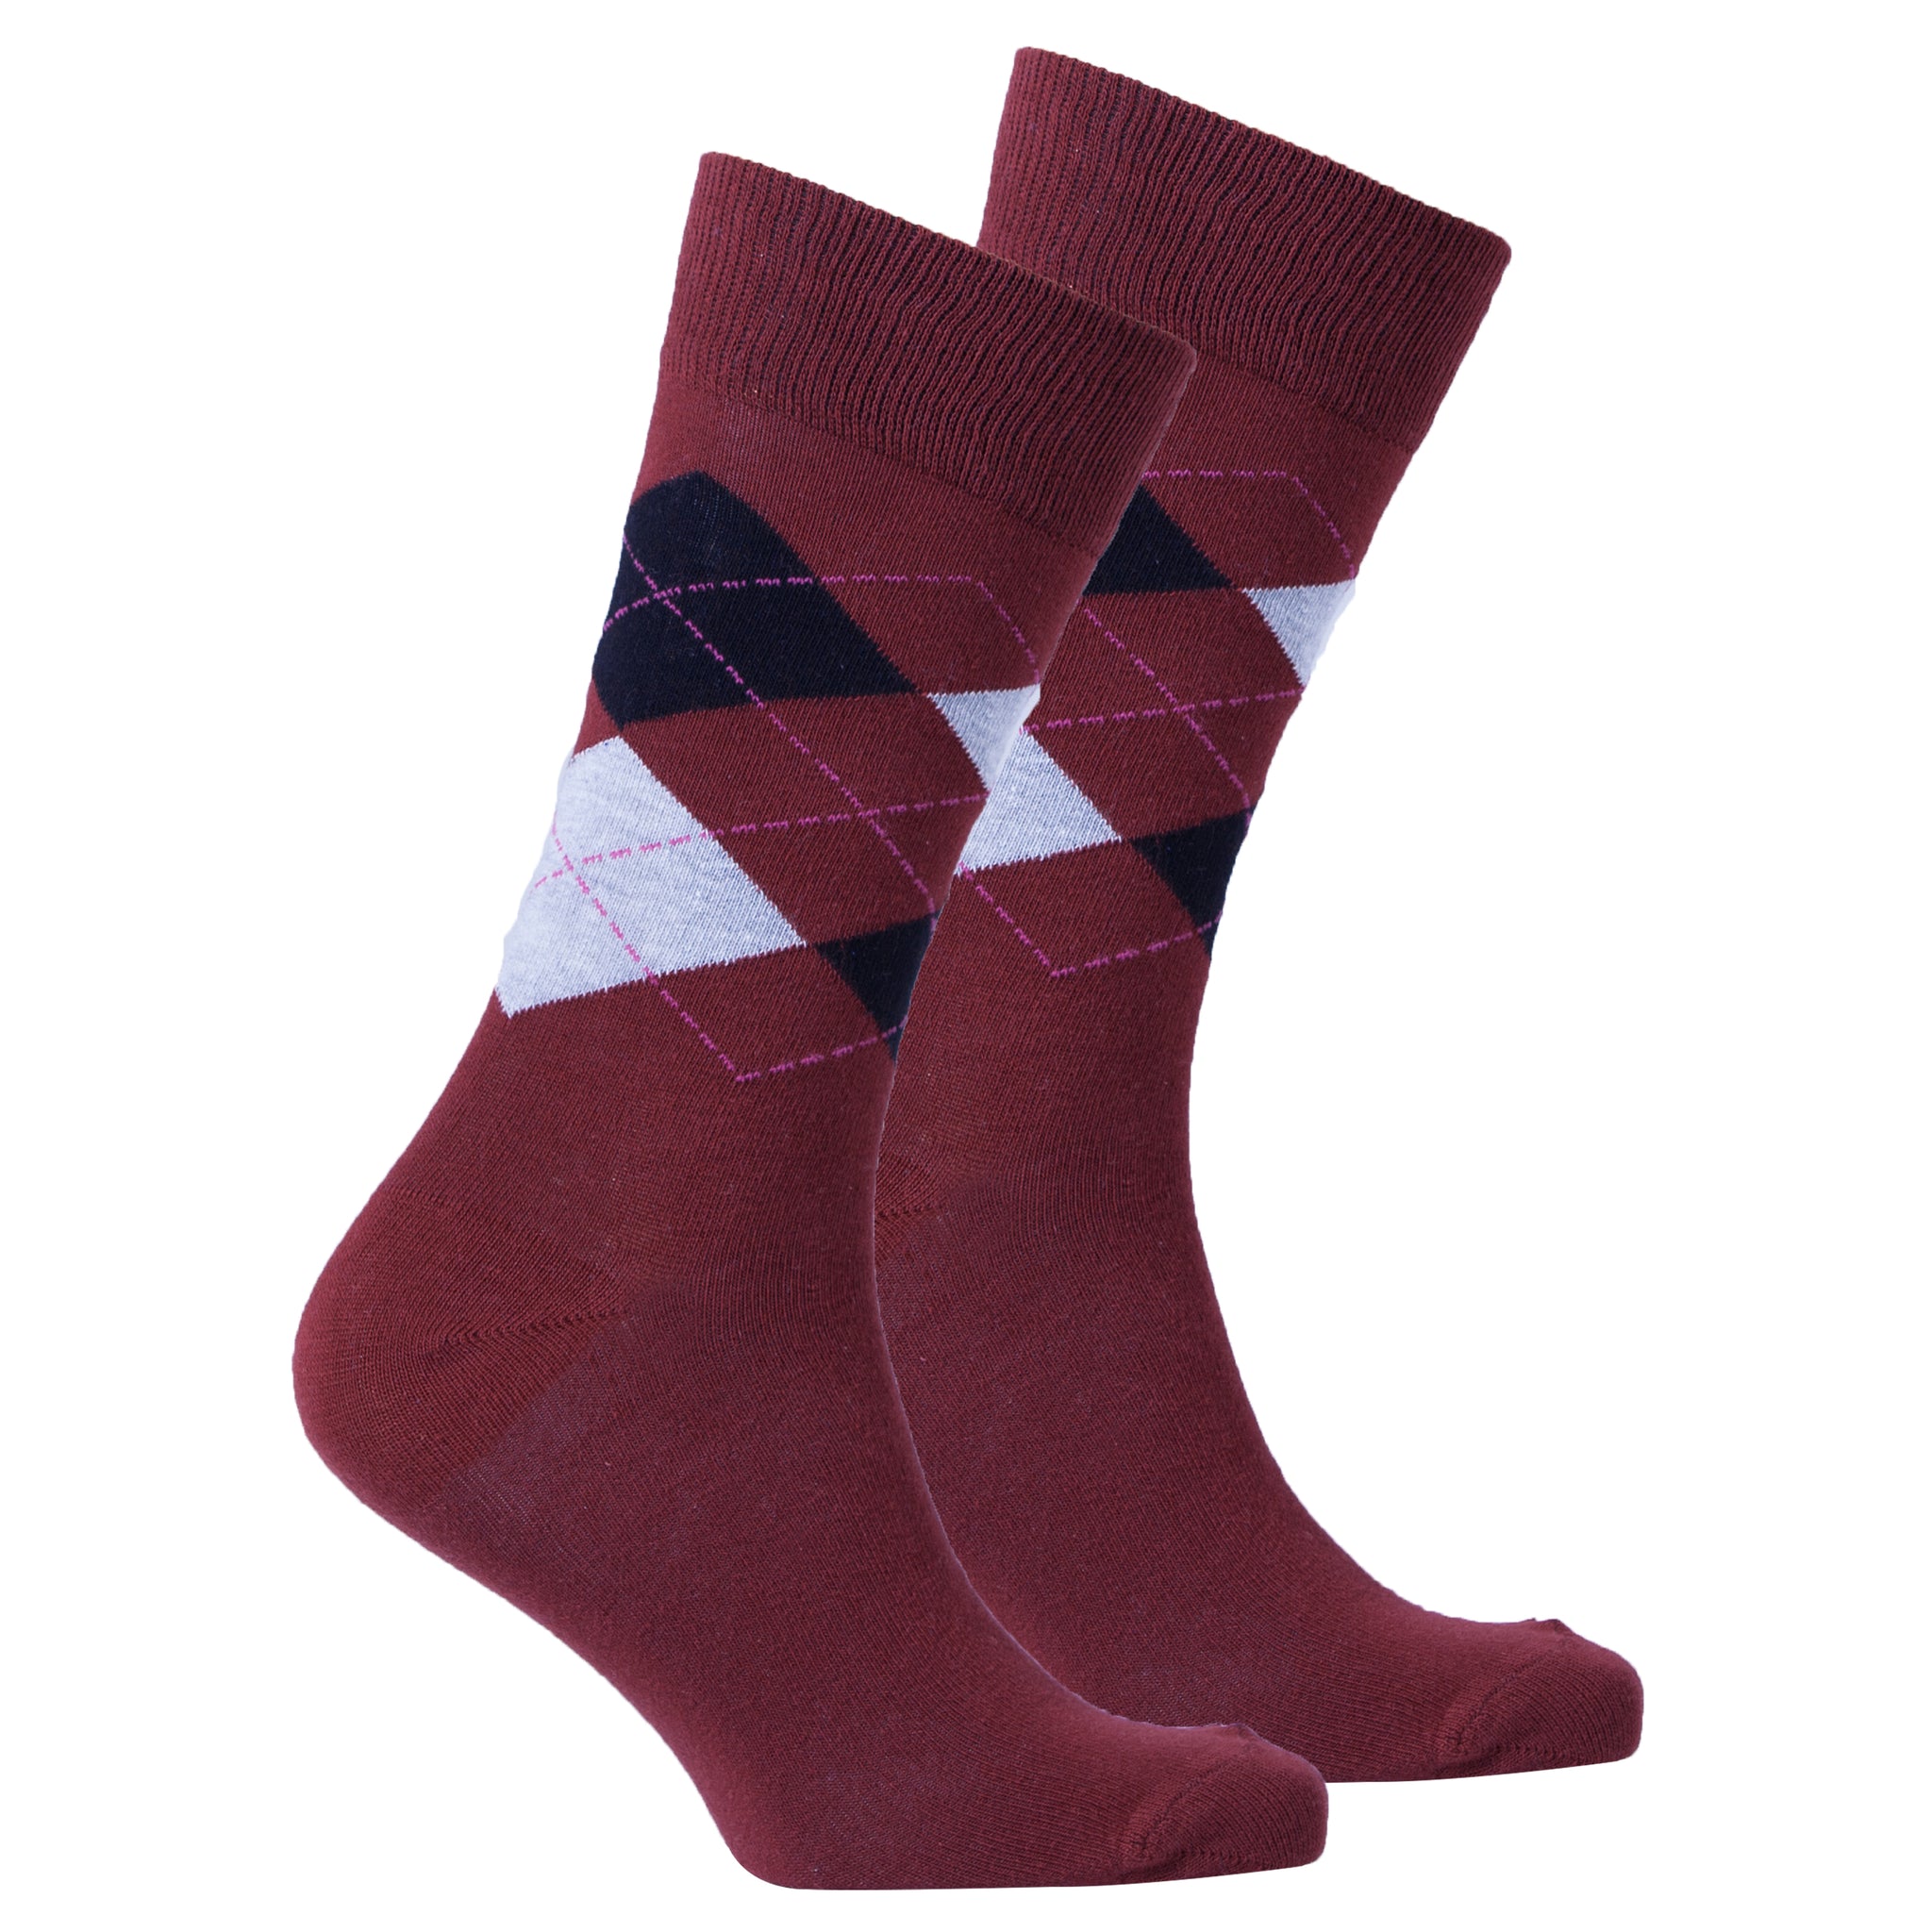 Men's Burgundy Argyle Socks